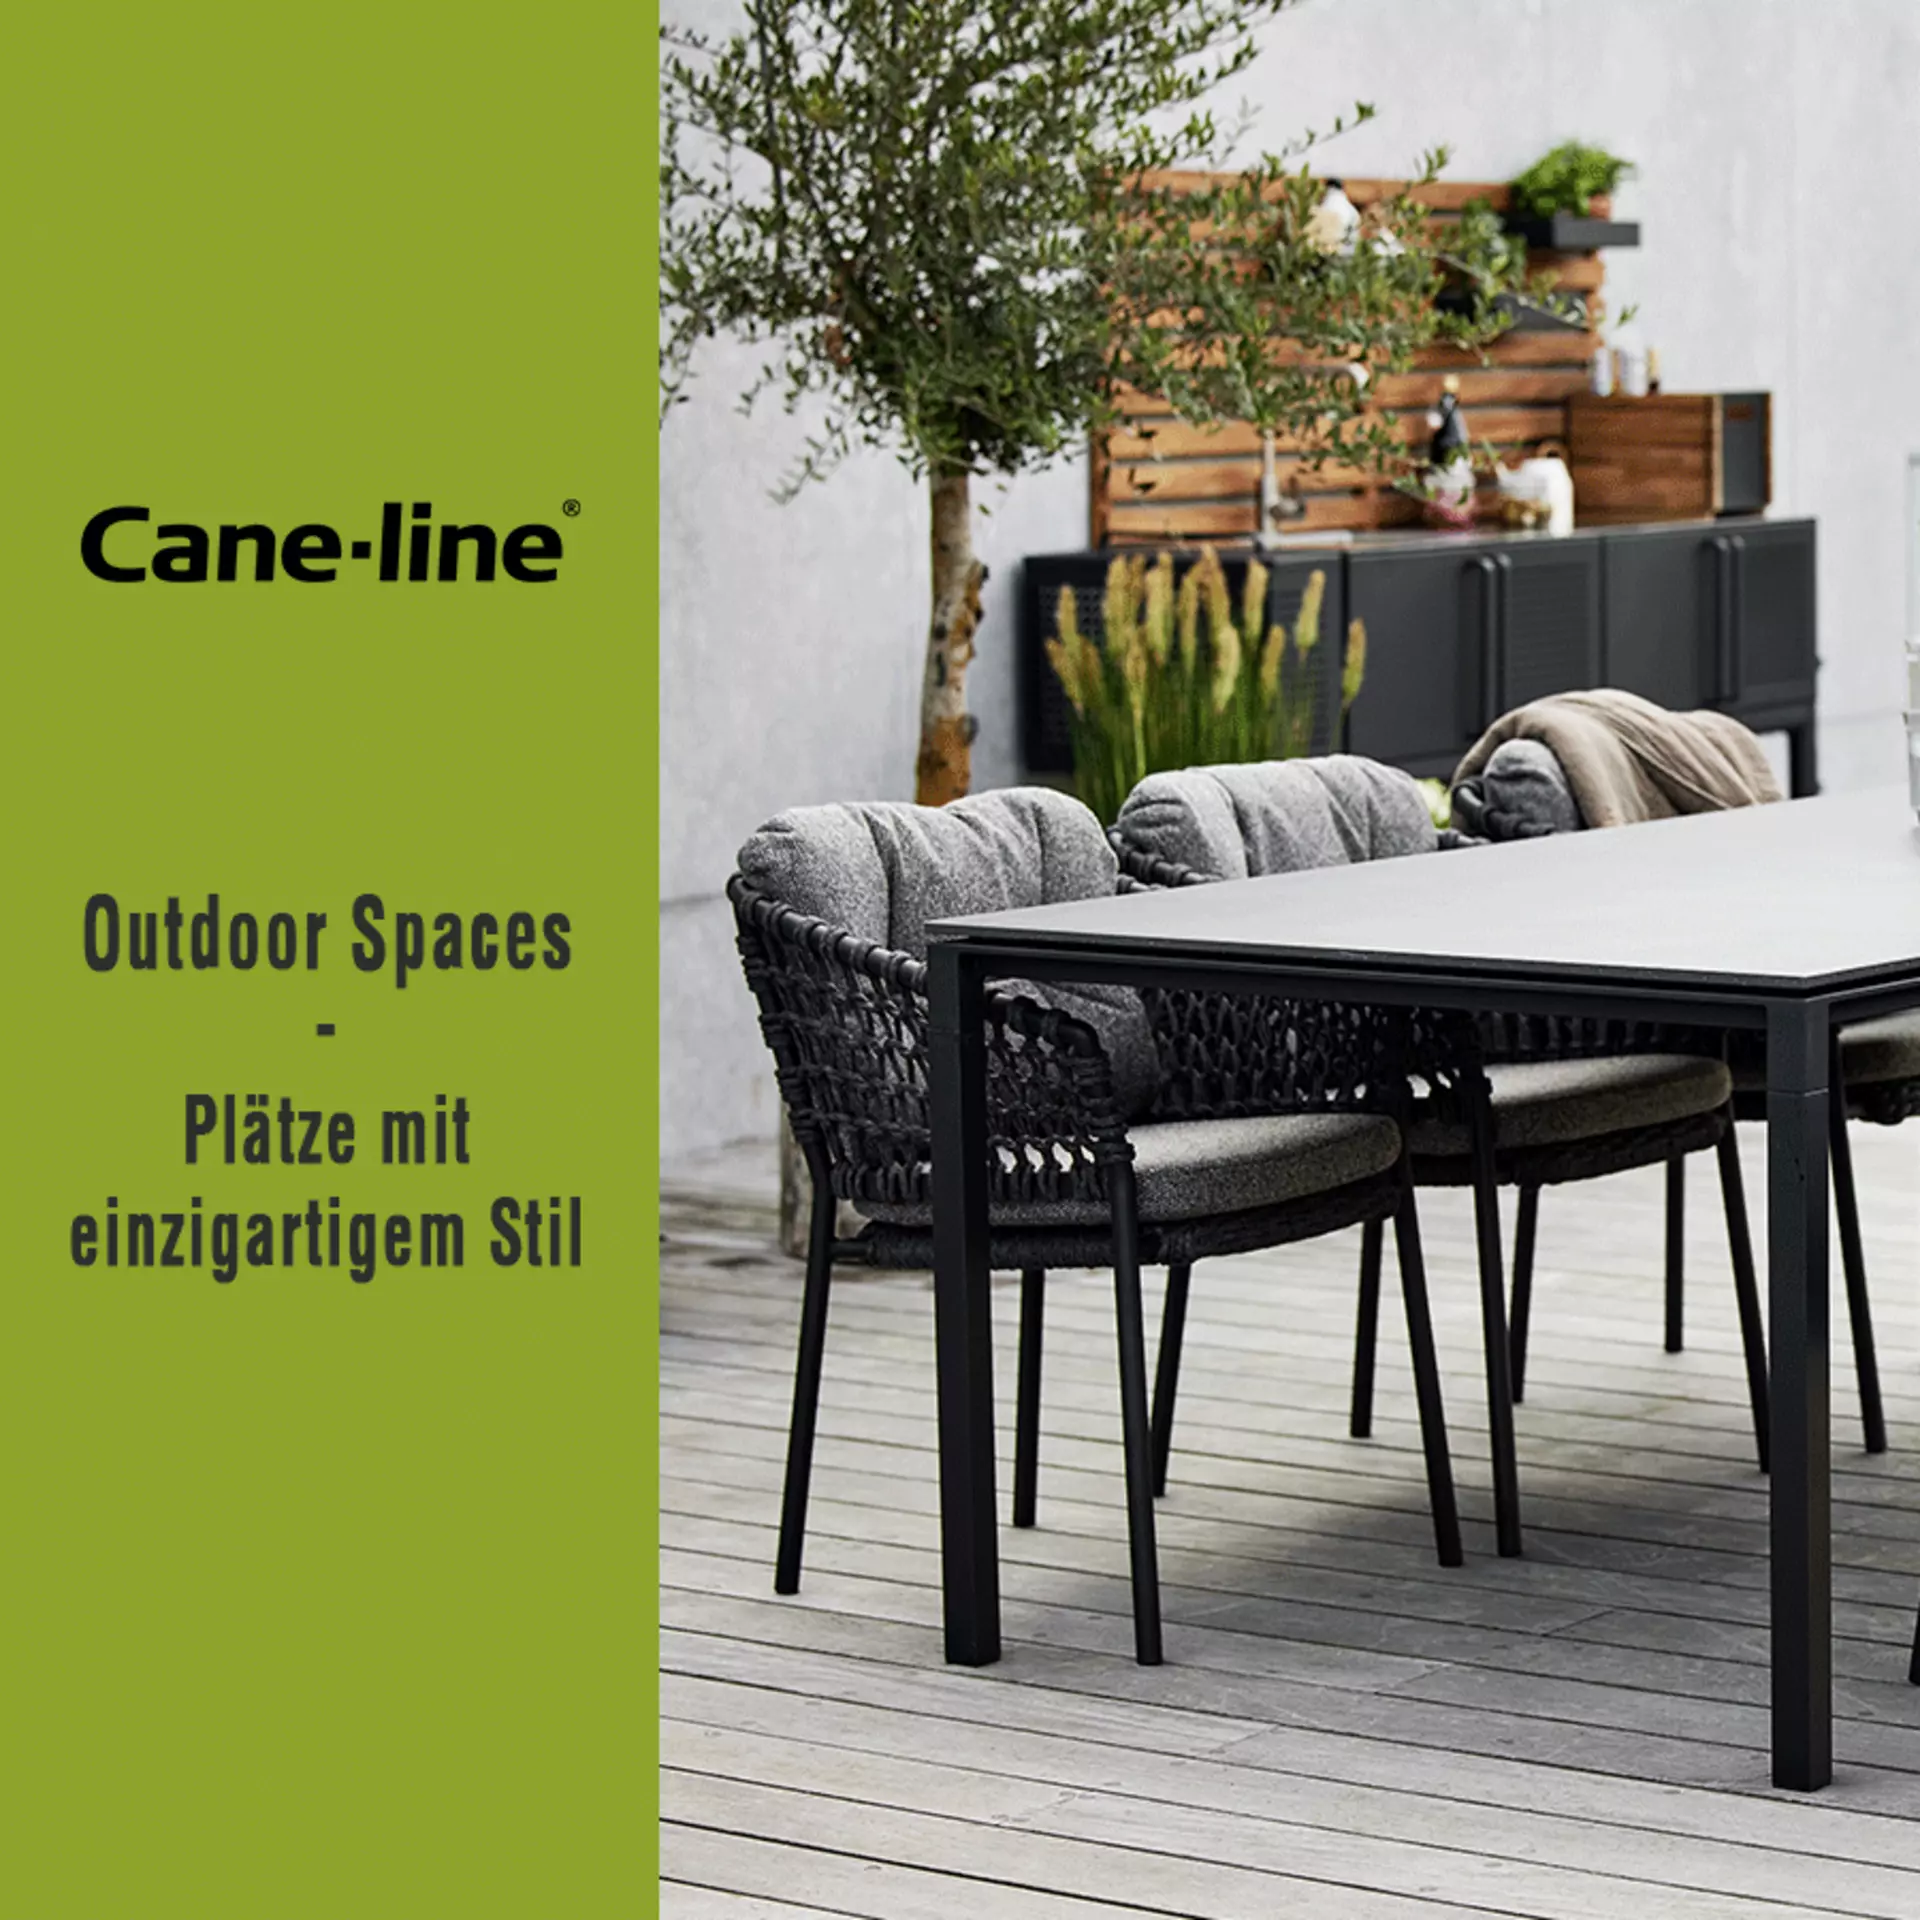 Cane-line Outdoor Spaces - Plätze mit einzigartigem Stil